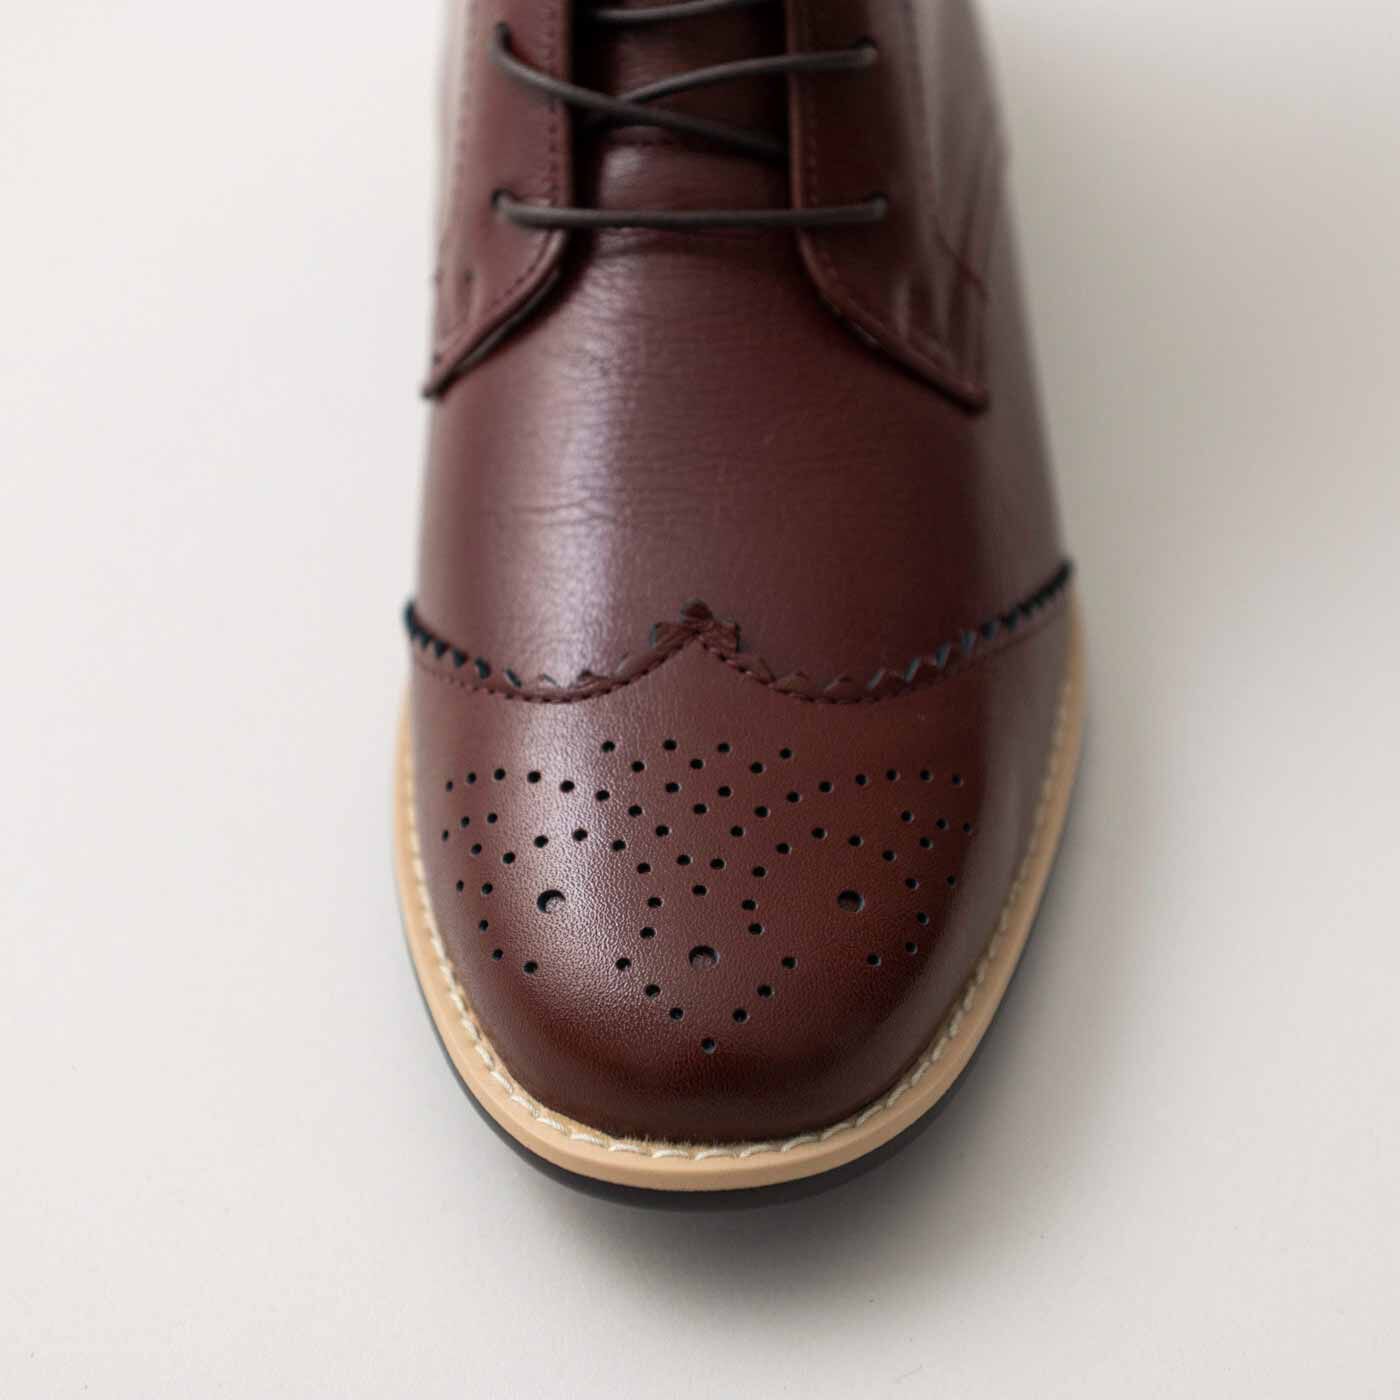 ＆Stories|長田の靴職人が作った　職人本革のウィングチップブーツ〈レッドブラウン〉|つま先は、飾り革をW字型の切り返しで縫い付けたウイングチップデザイン。